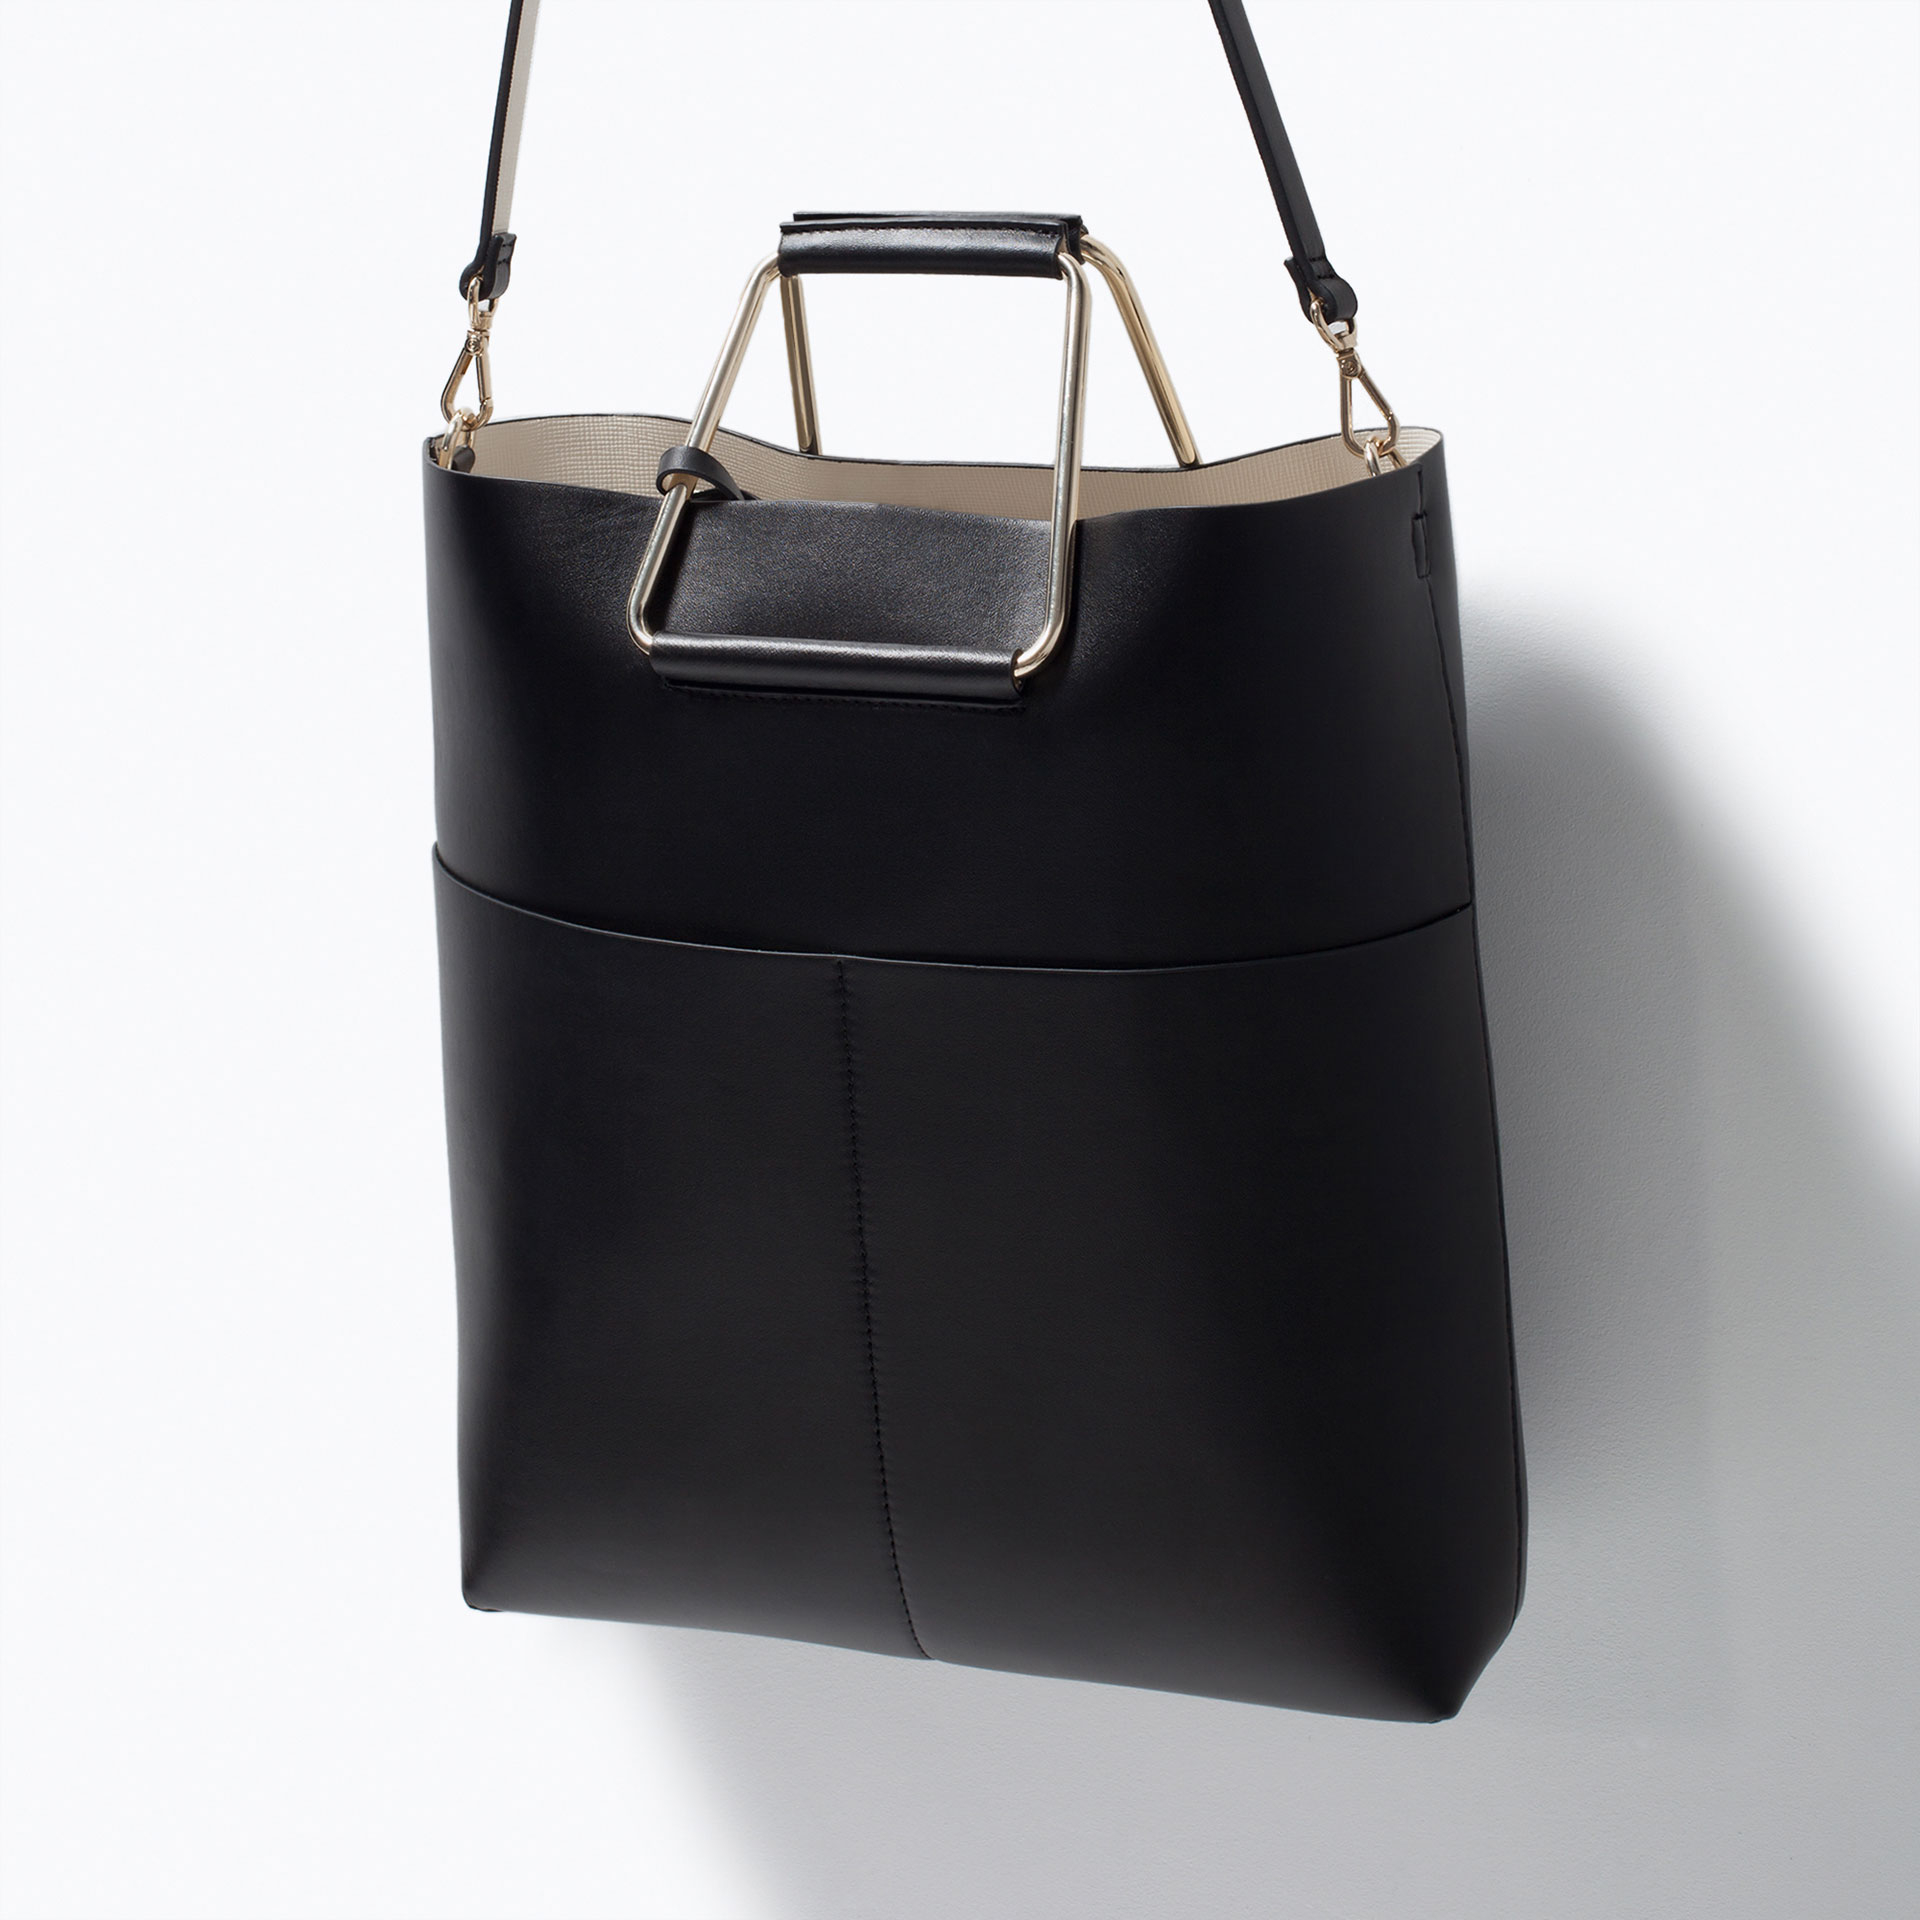 58 Metal Bag Handles, One Pair Of Oval Metal Eyelet Style Bag ...